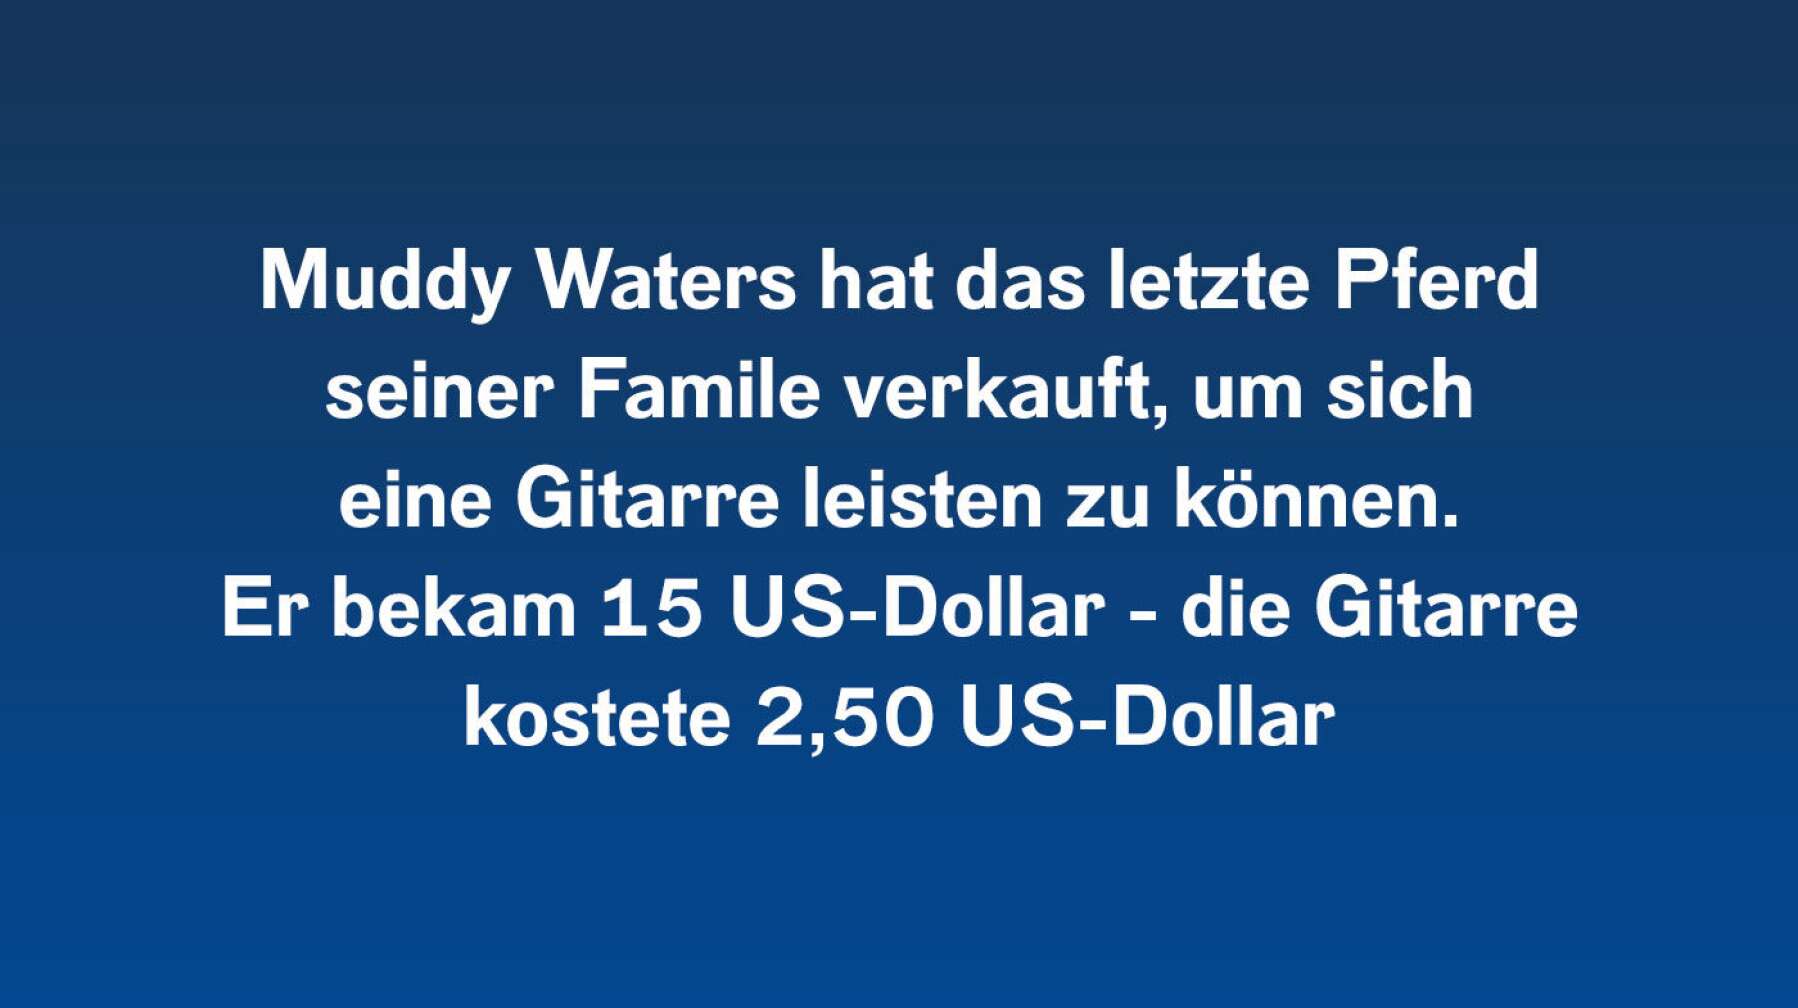 6 Fakten über Muddy Waters #5